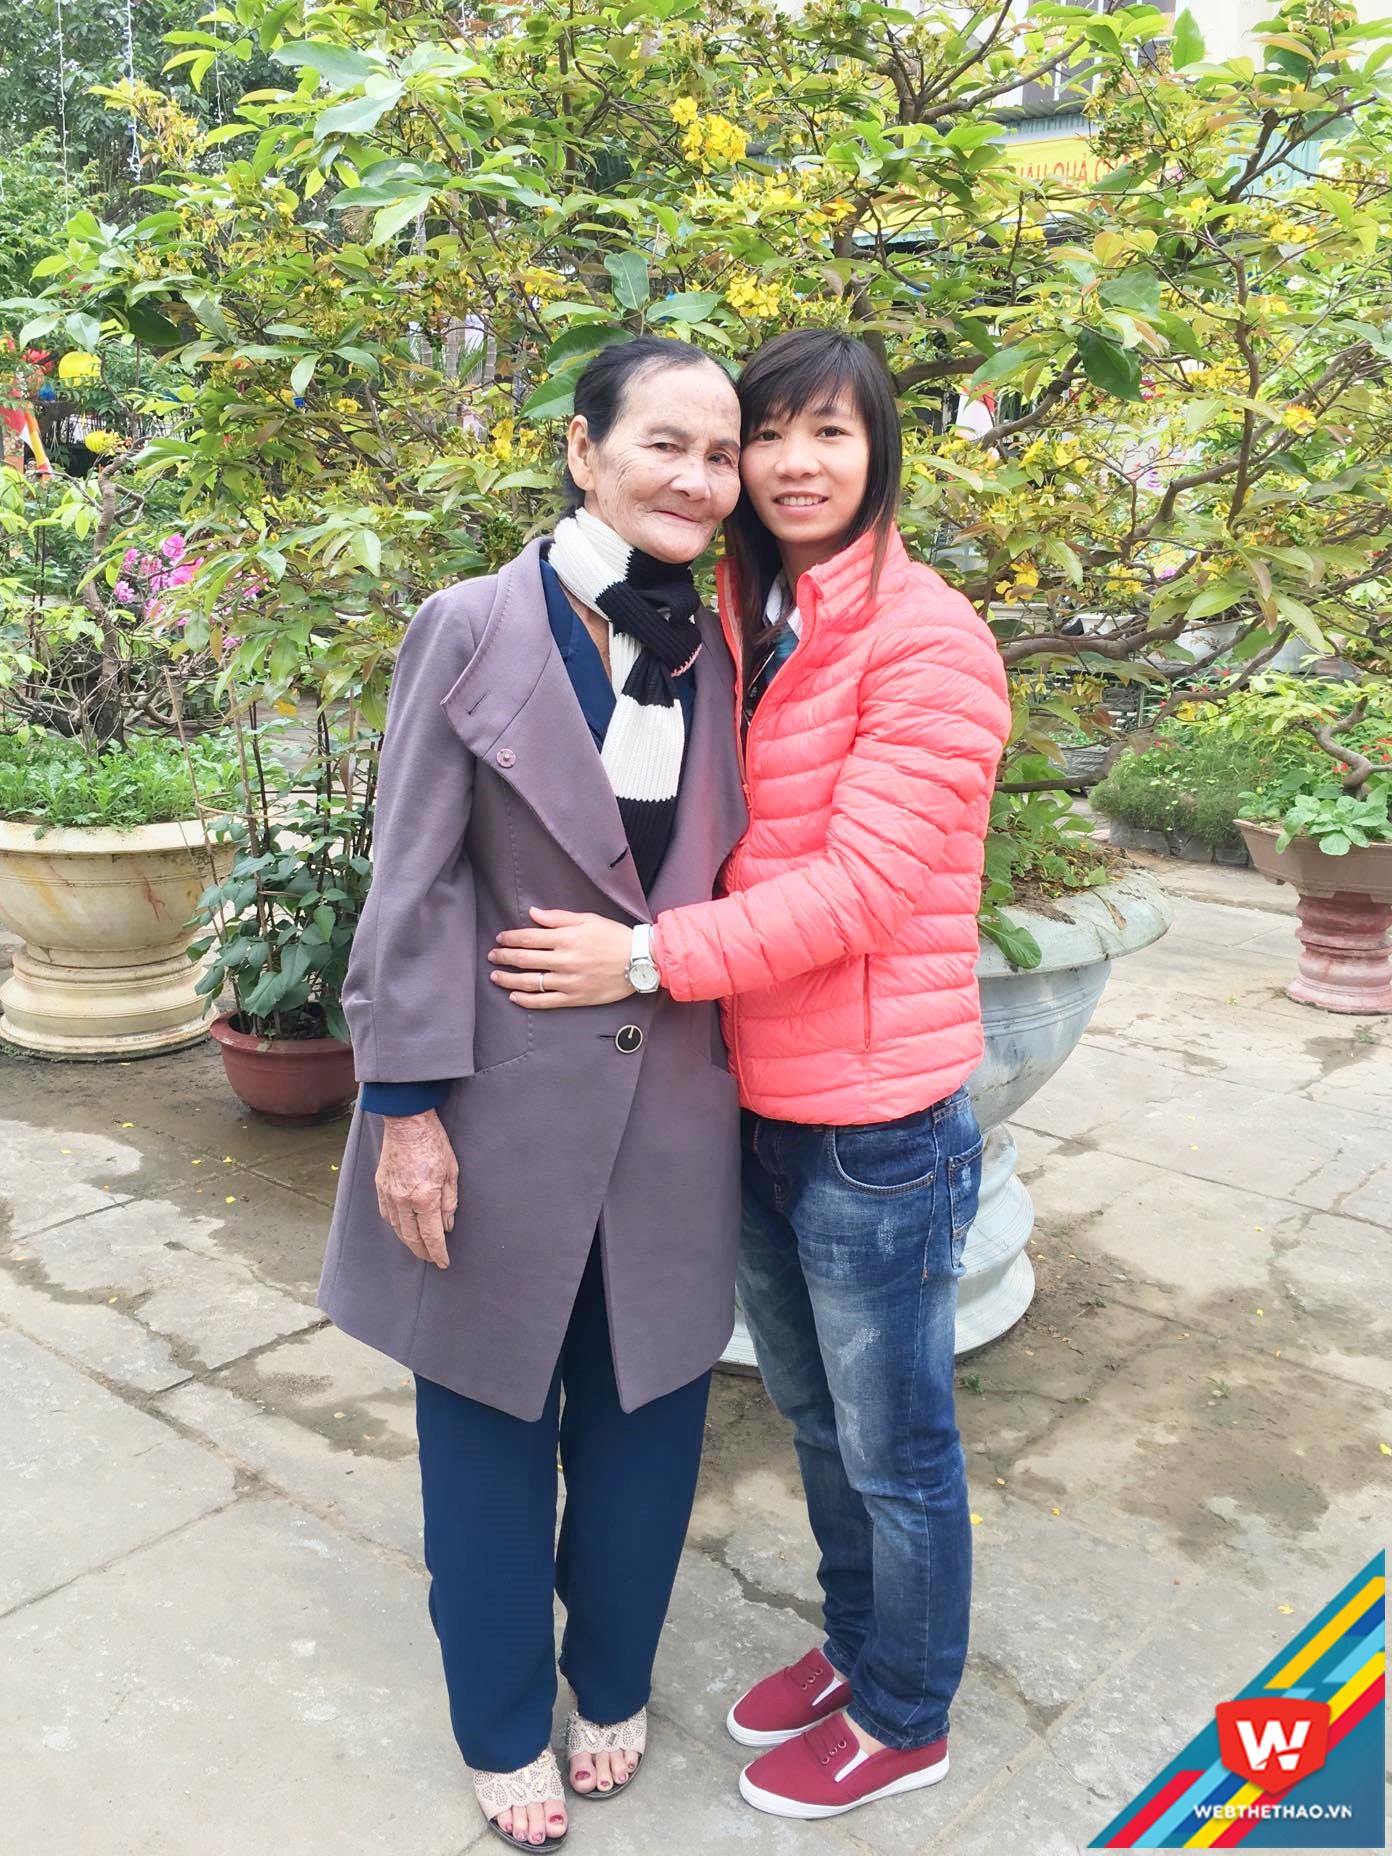 Thùy Trang và mẹ hồi Tết Nguyên đán 2016, thời điểm bà Hồng chưa bị bệnh.